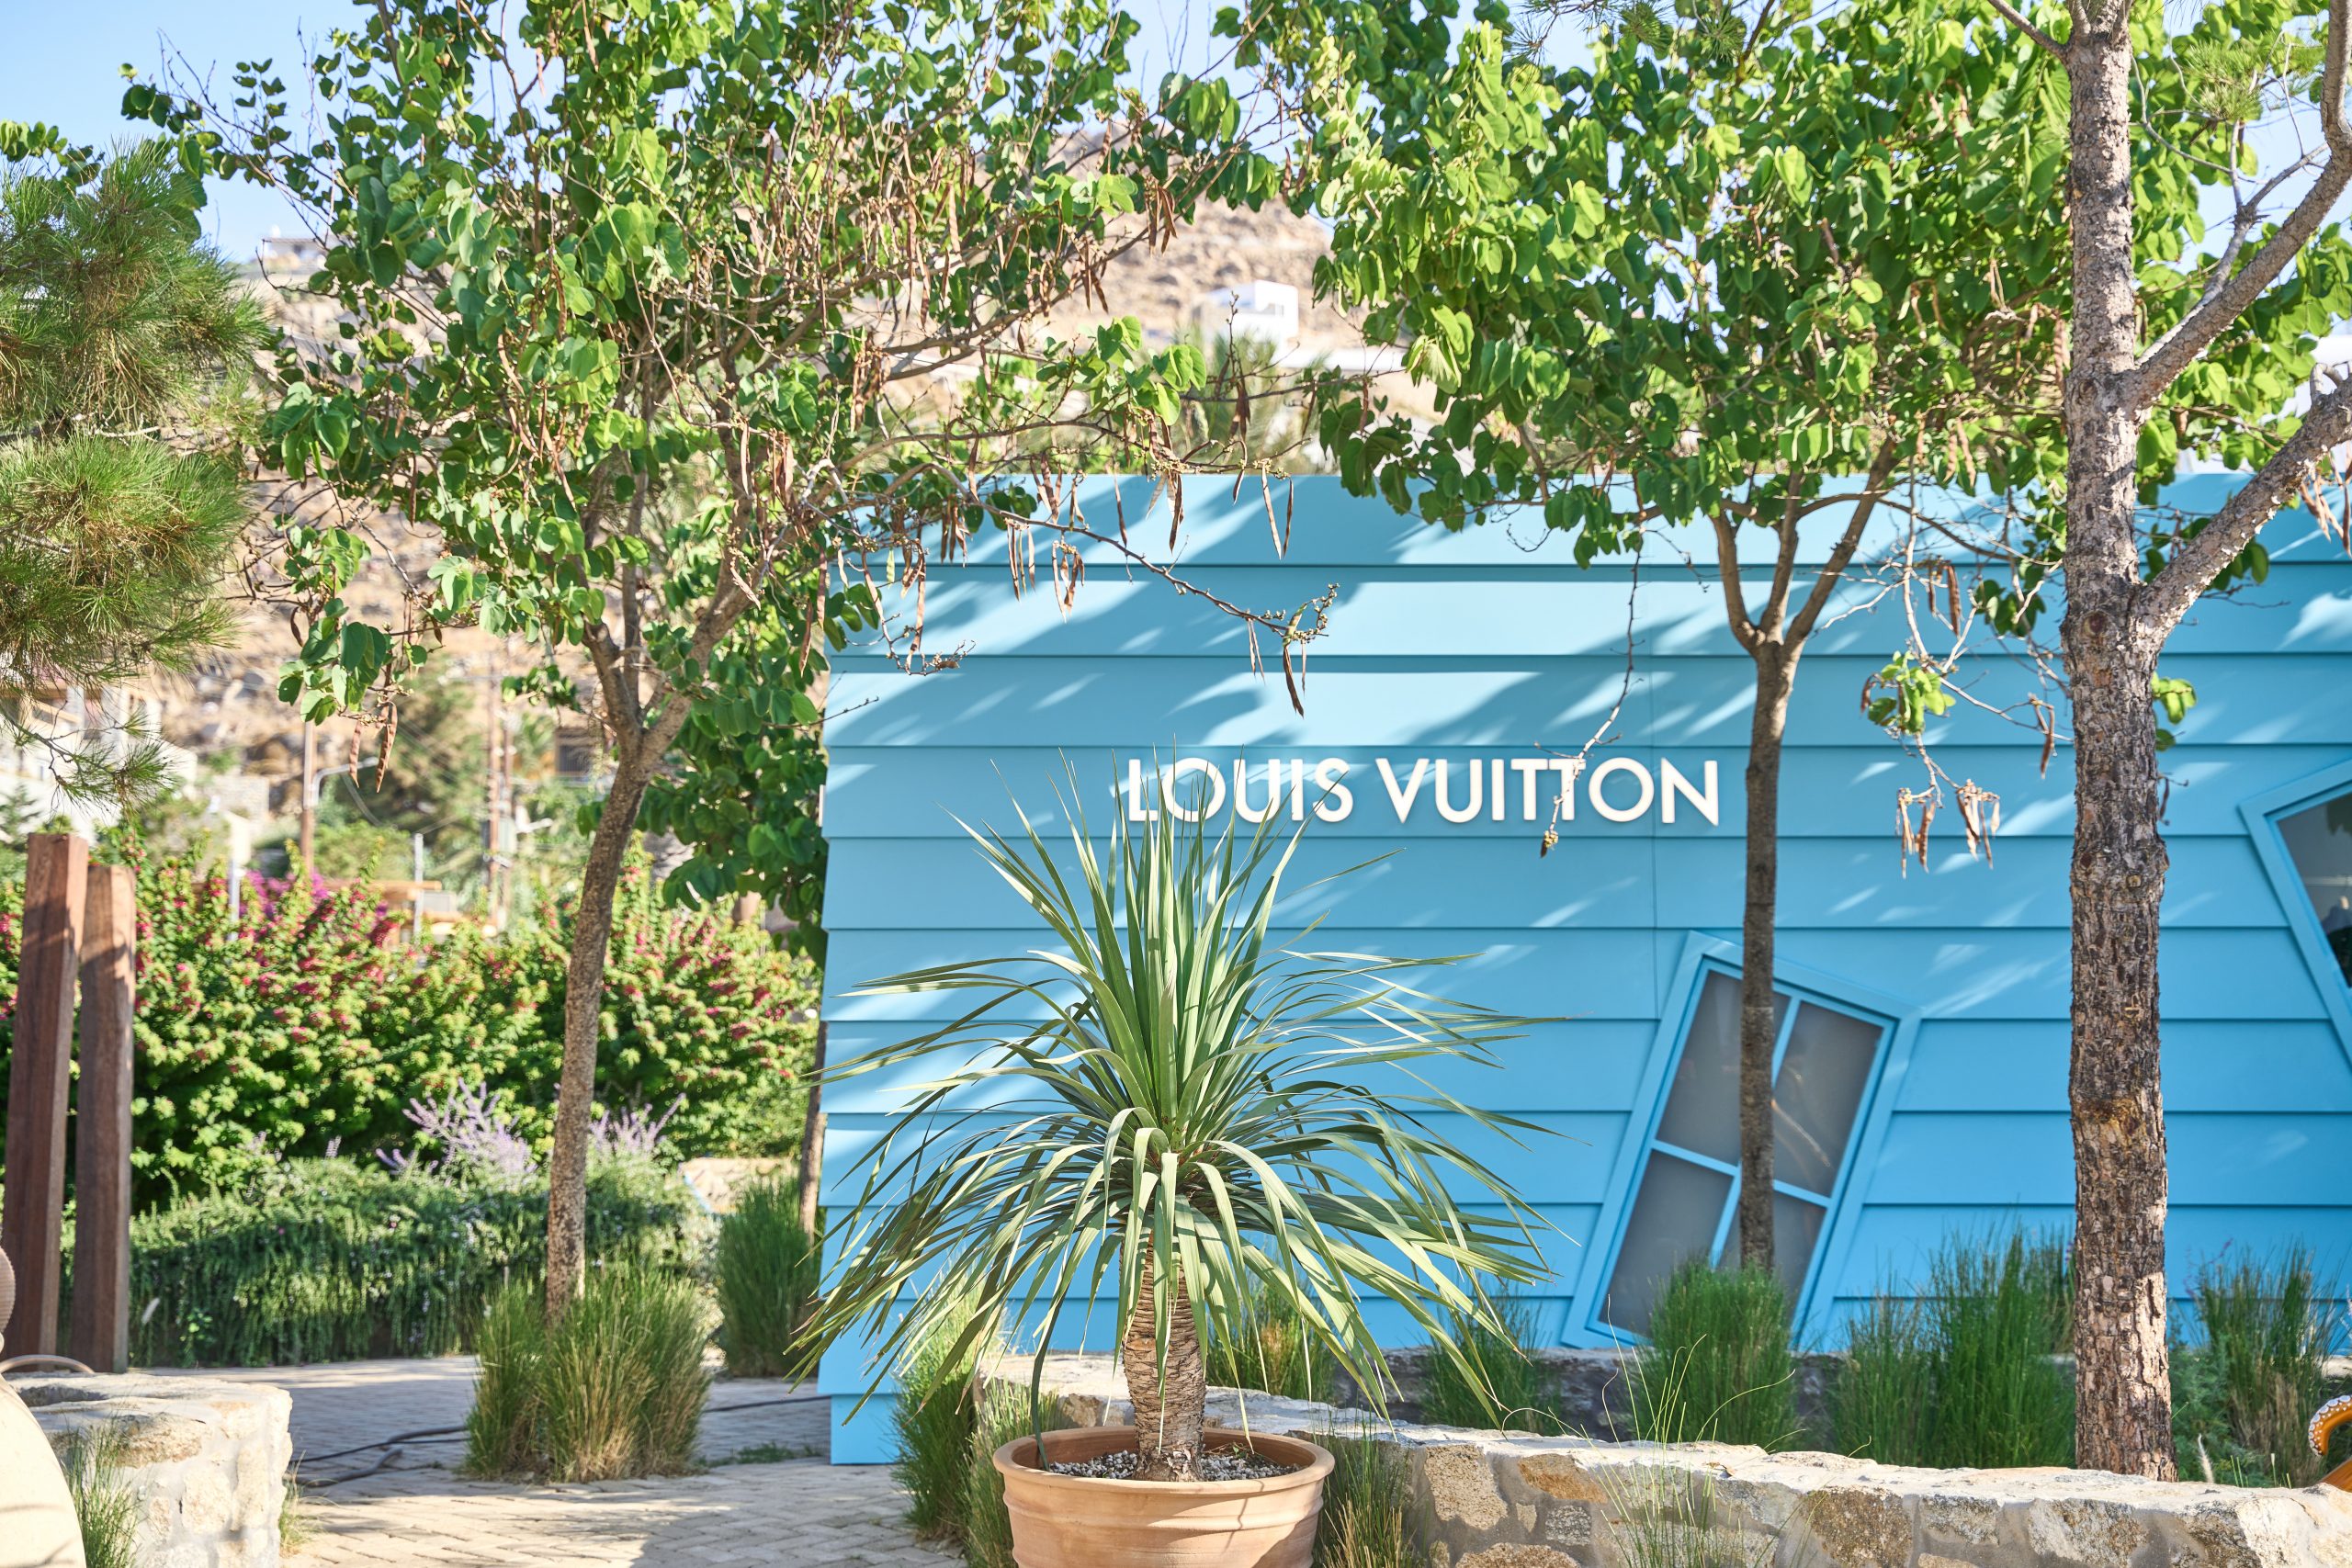 Το νέο pop-up store της Louis Vuitton στη Μύκονο φωνάζει “Ελλάδα”